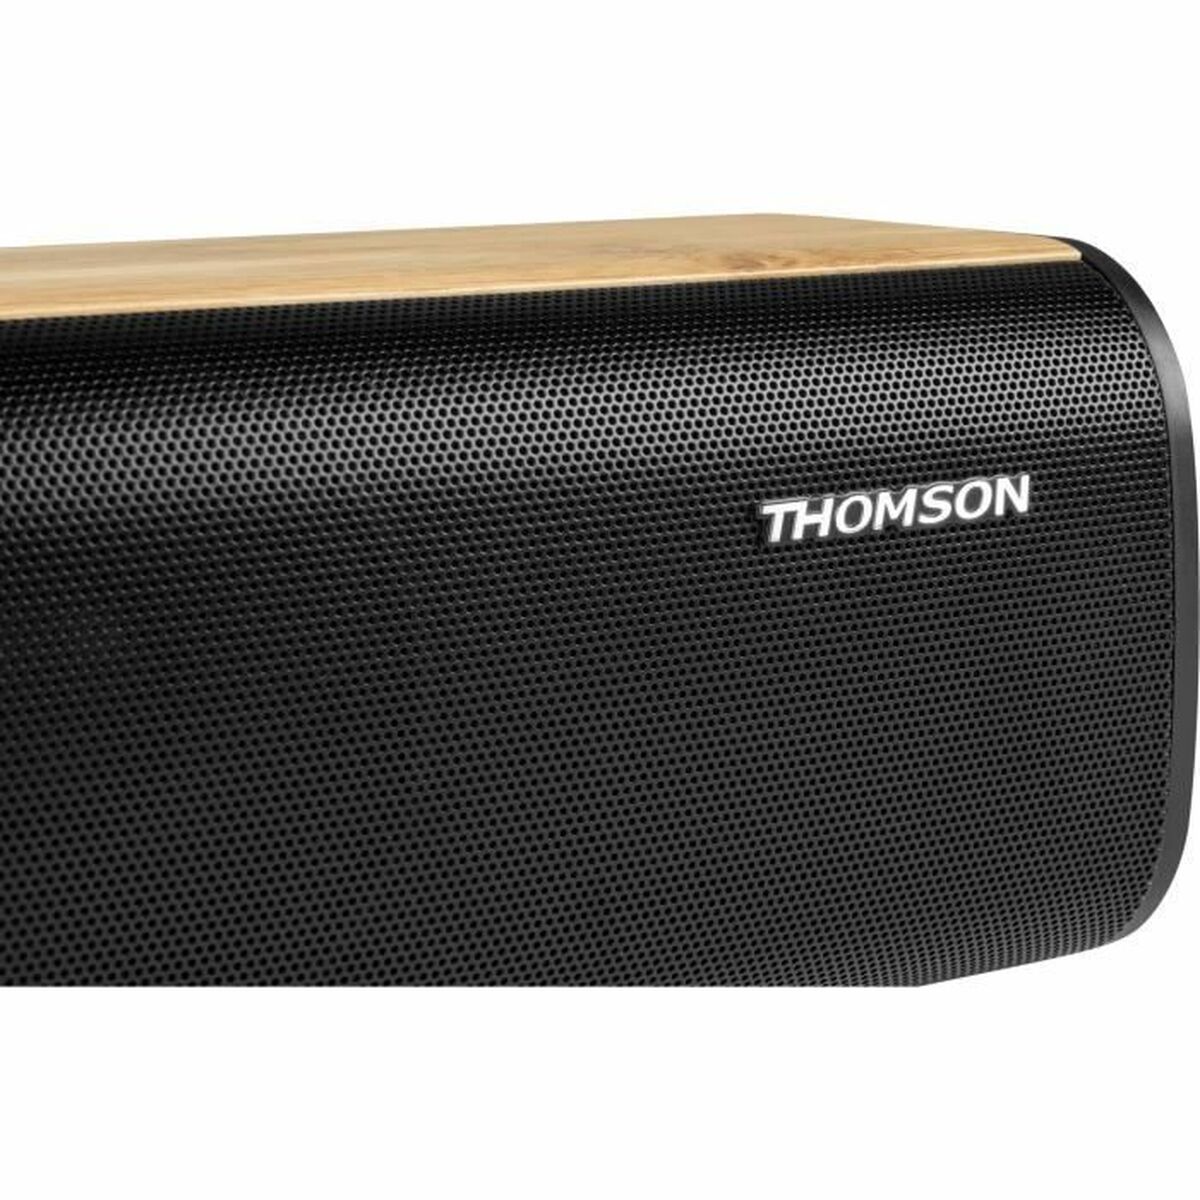 Σύστημα Ηχείων Soundbar Thomson 200 W